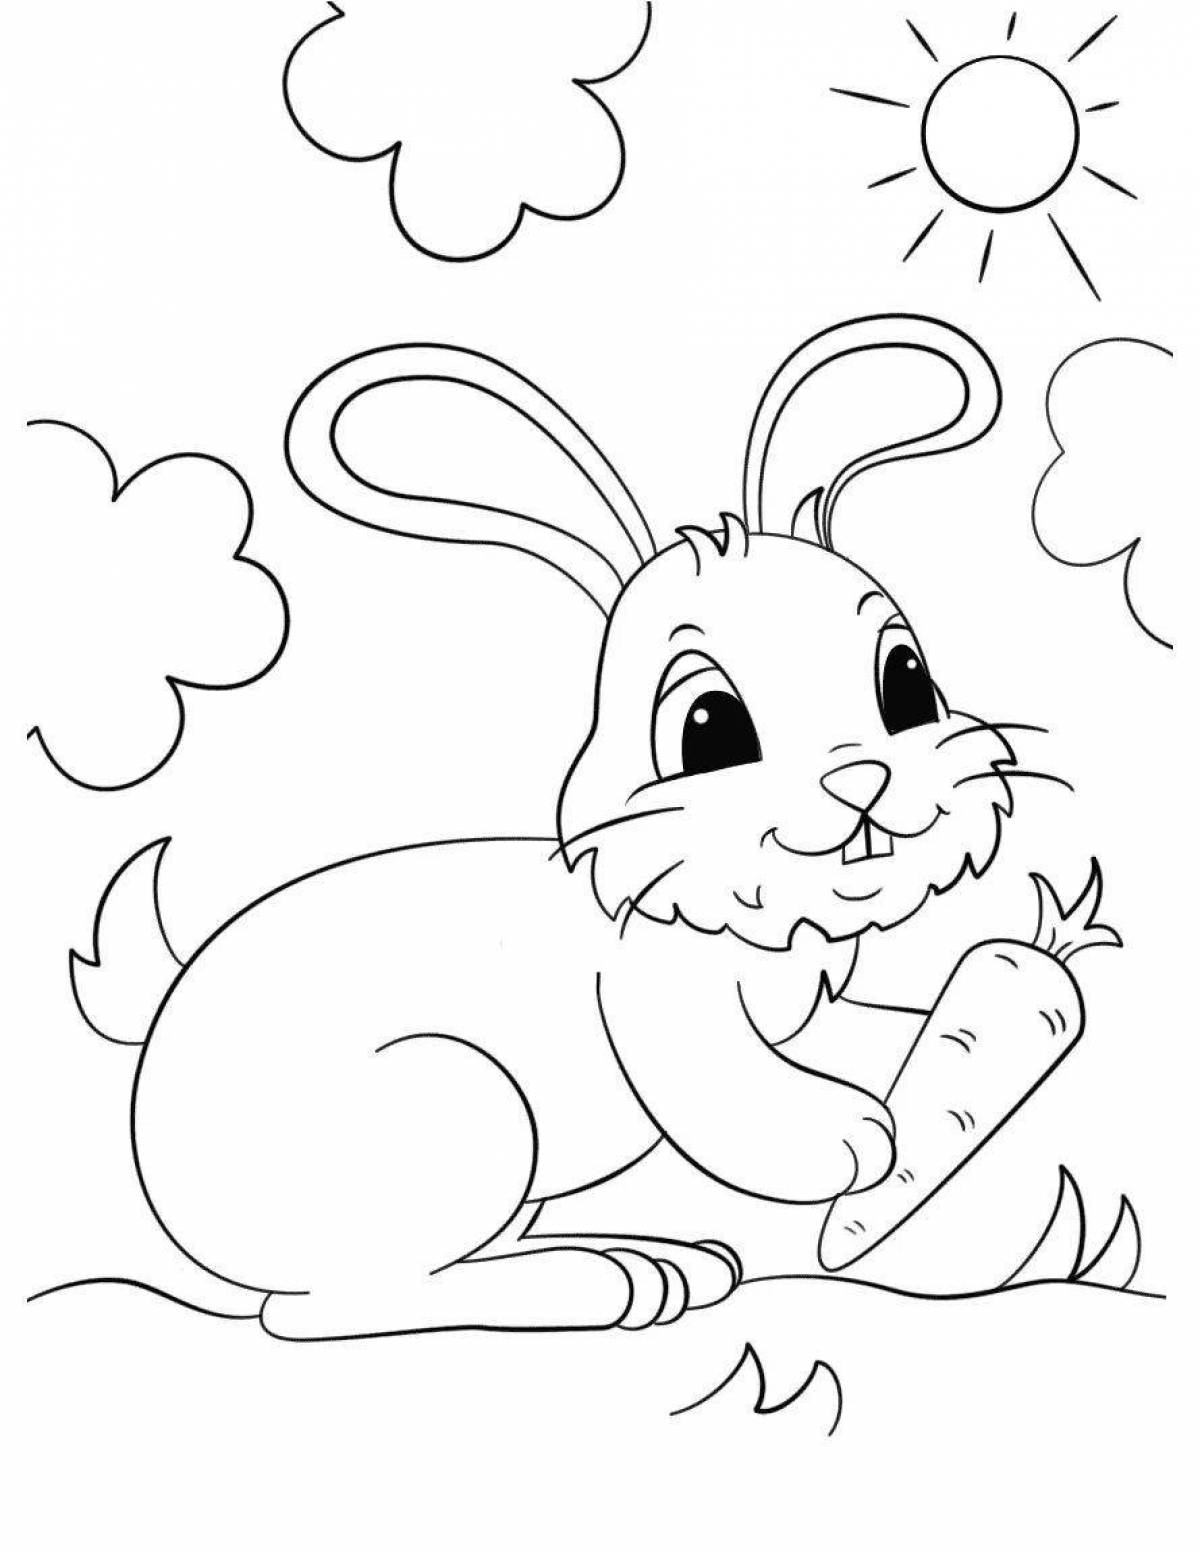 Милая раскраска кролик с морковкой для детей